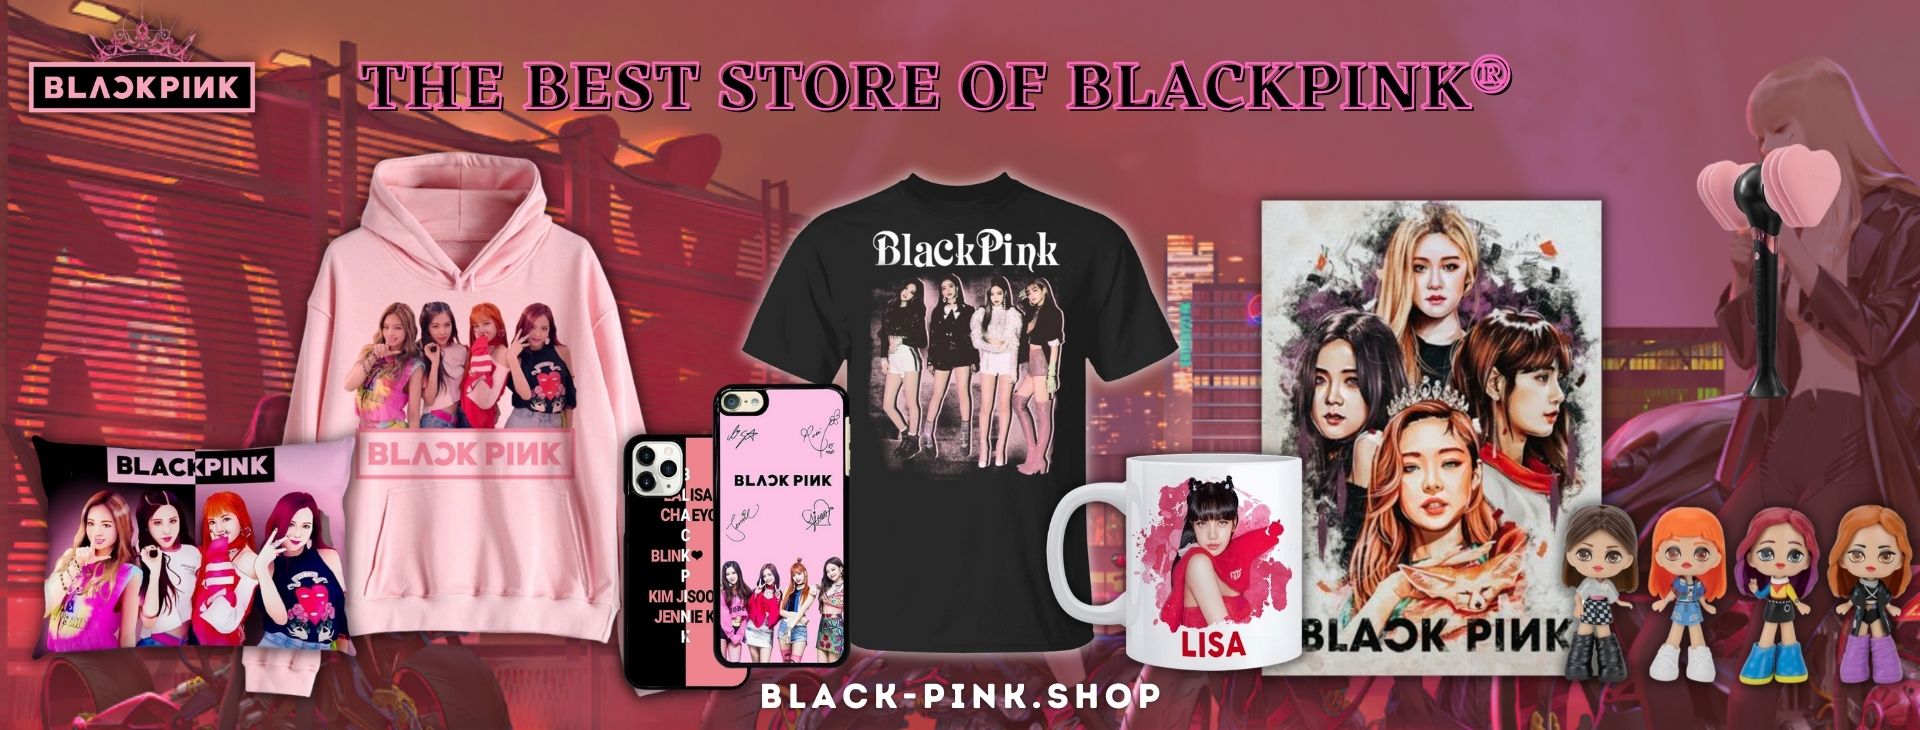 Black Pink Shop Banner 1920x730px 1 - Blackpink Shop